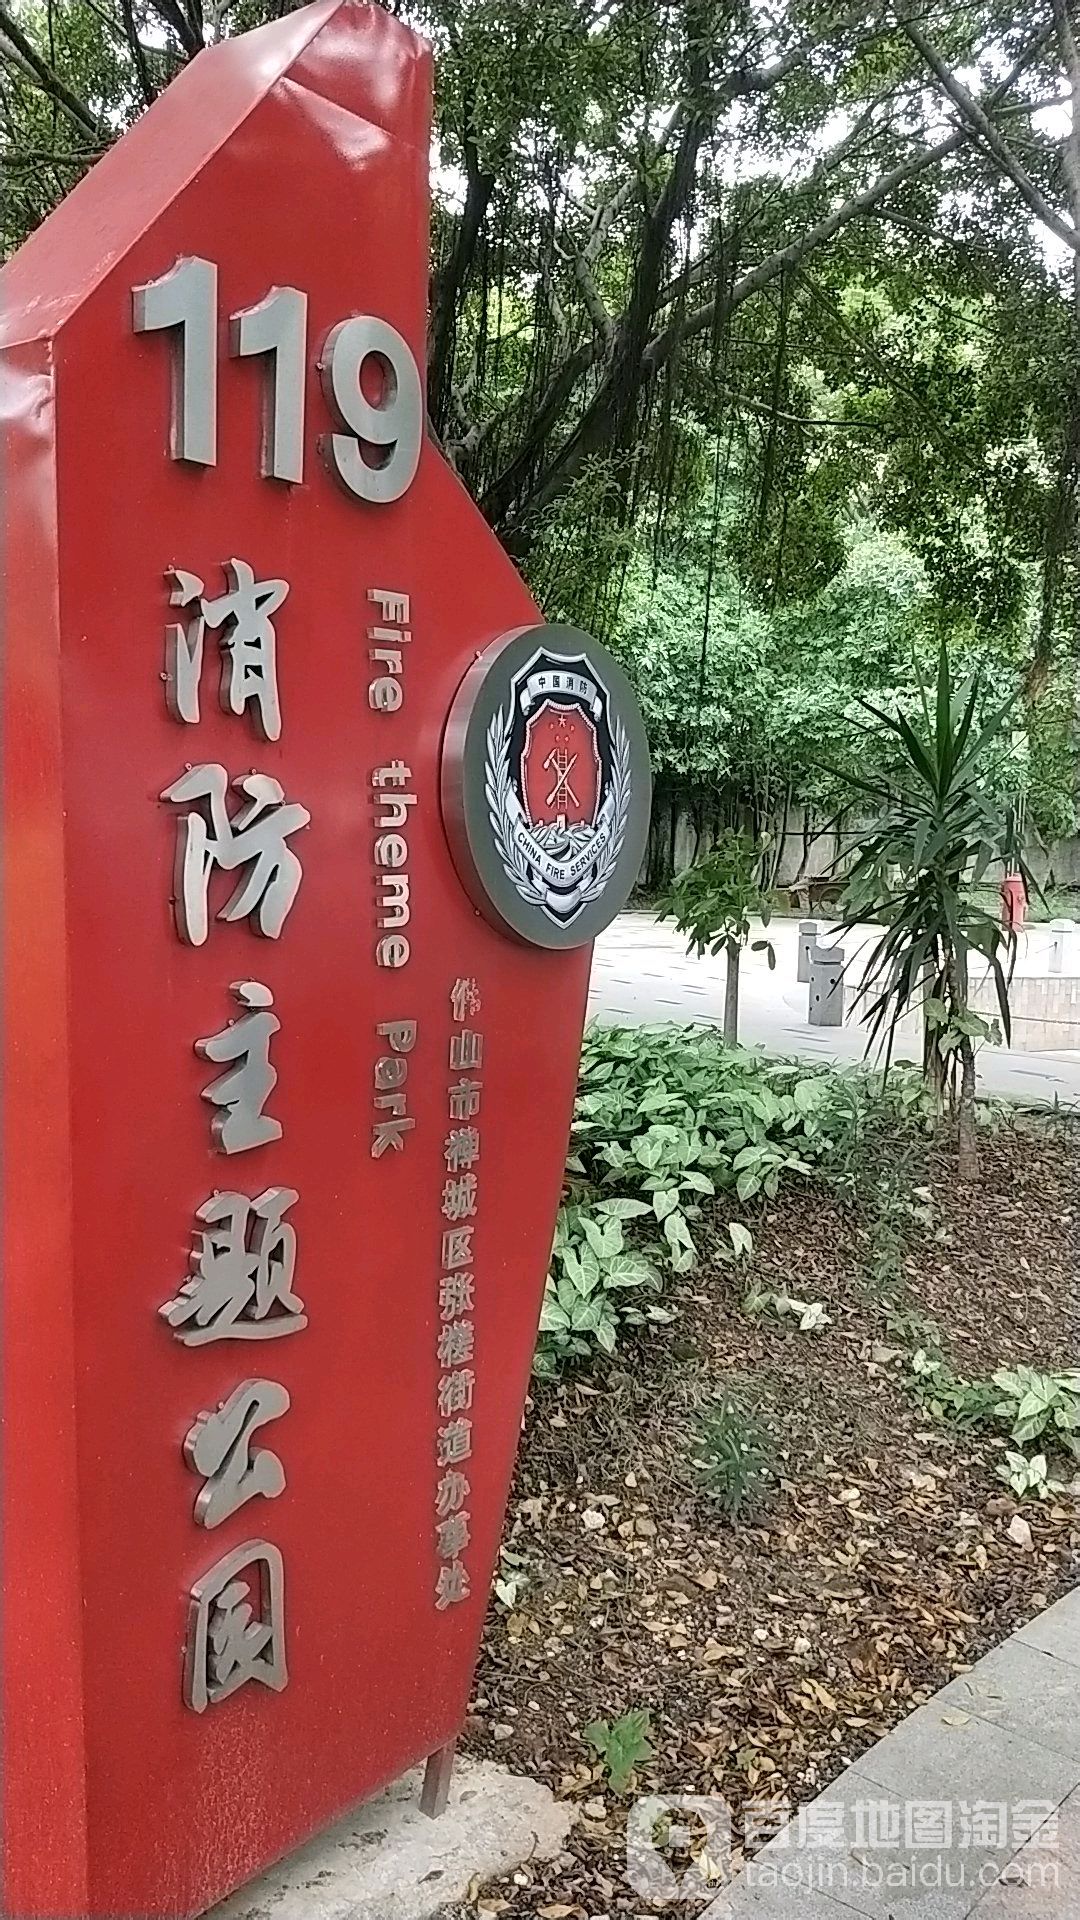 119消防主題公園